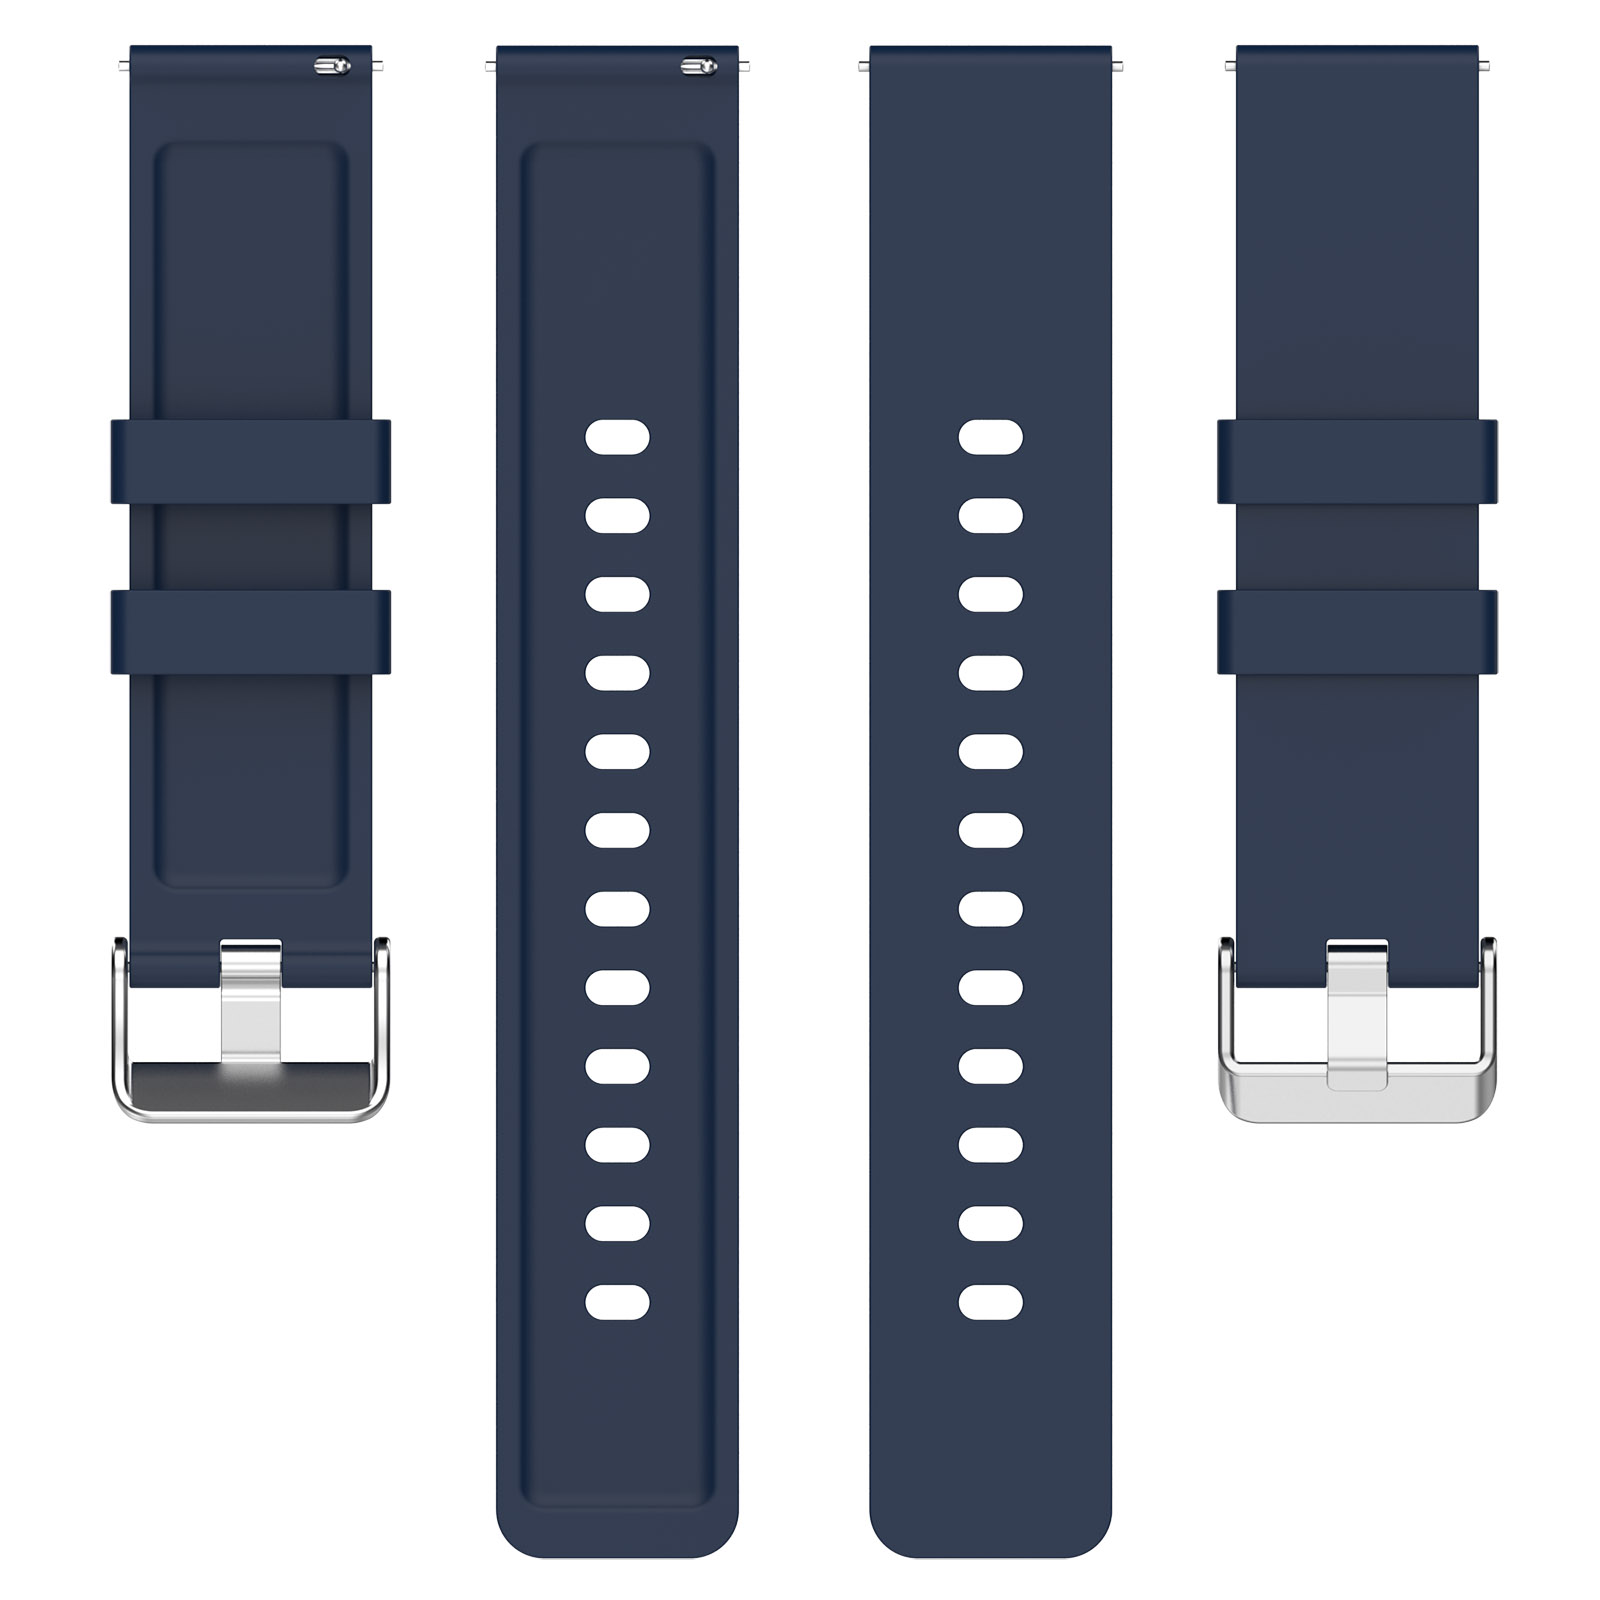 INF Armband Silikon, Ersatzarmband, OnePlus, Nord Watch, Dunkelblau